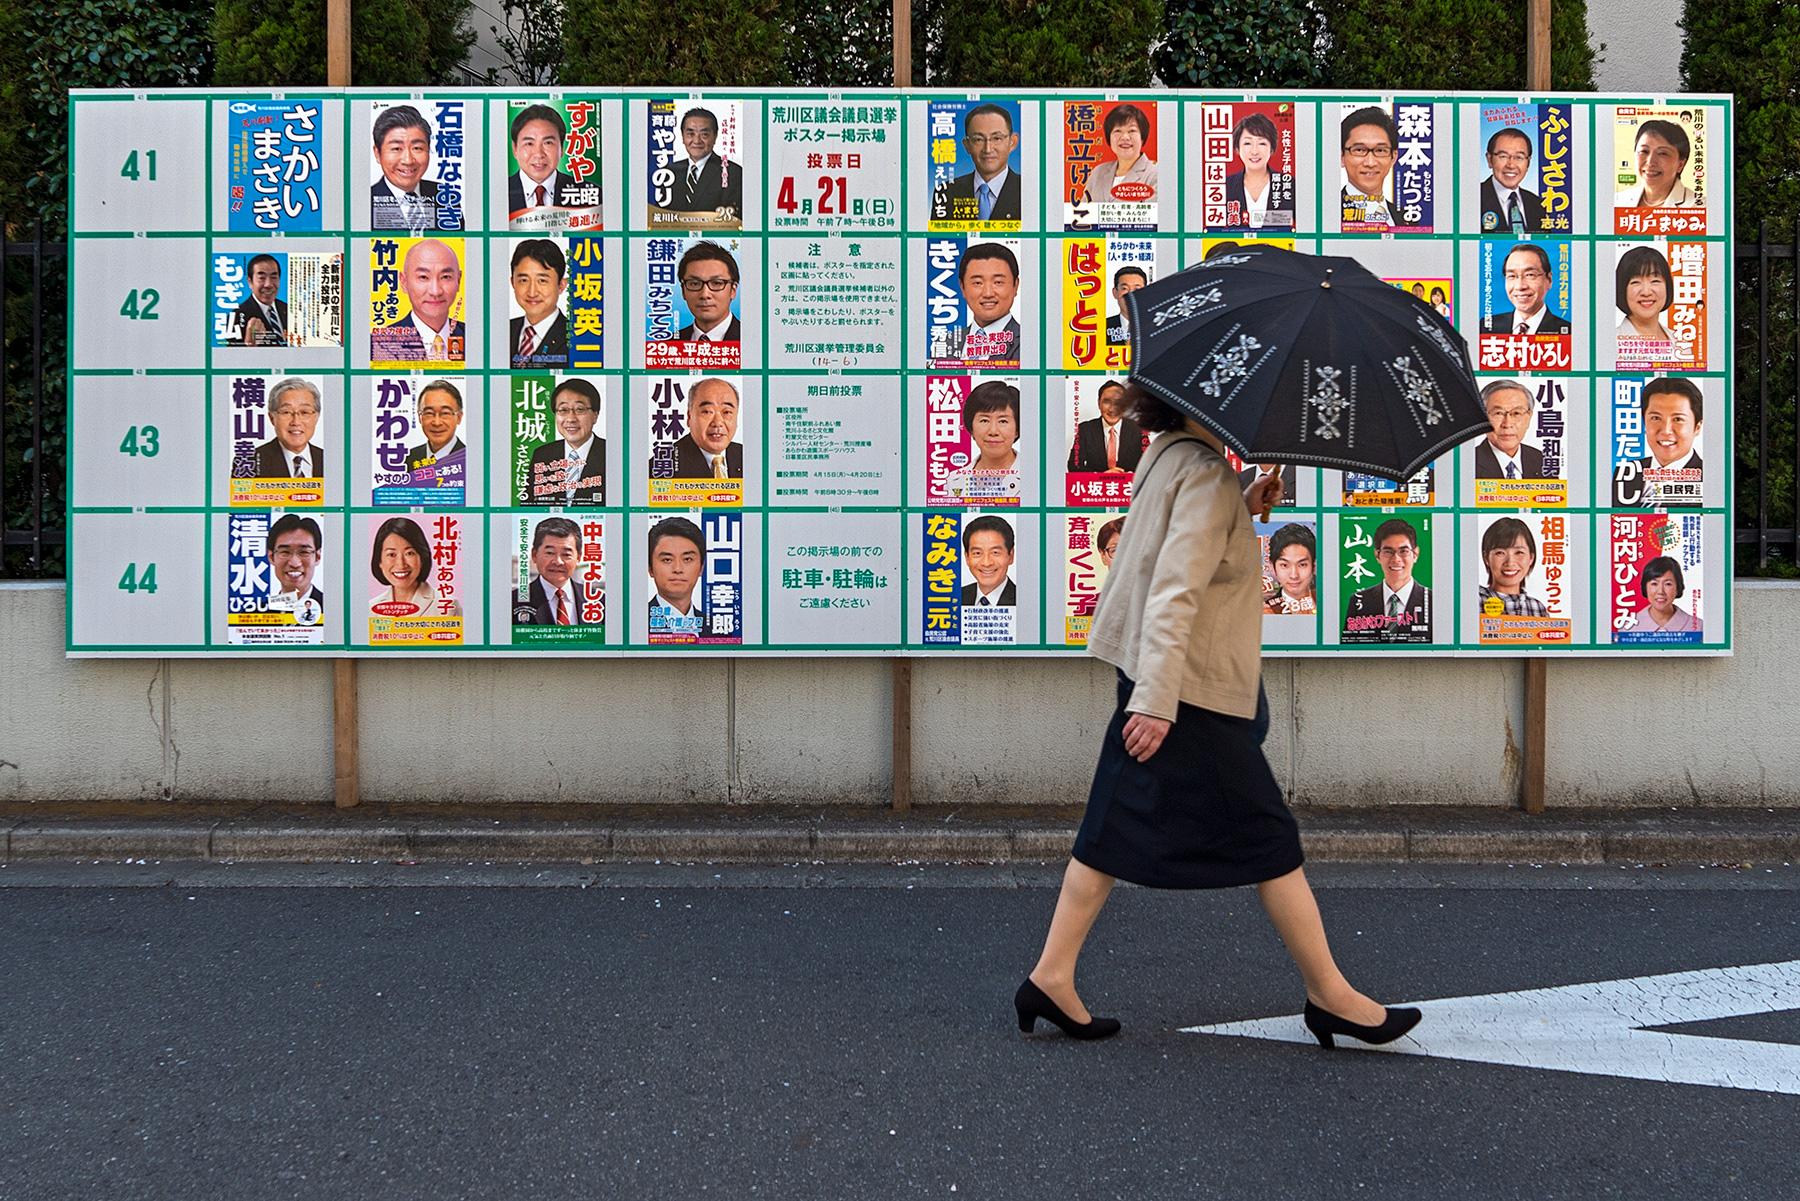 Eine Frau mit Regenschirm vor Wahlplakaten bei den Einheitlichen Regionalwahlen in Tokio, Japan, 2019